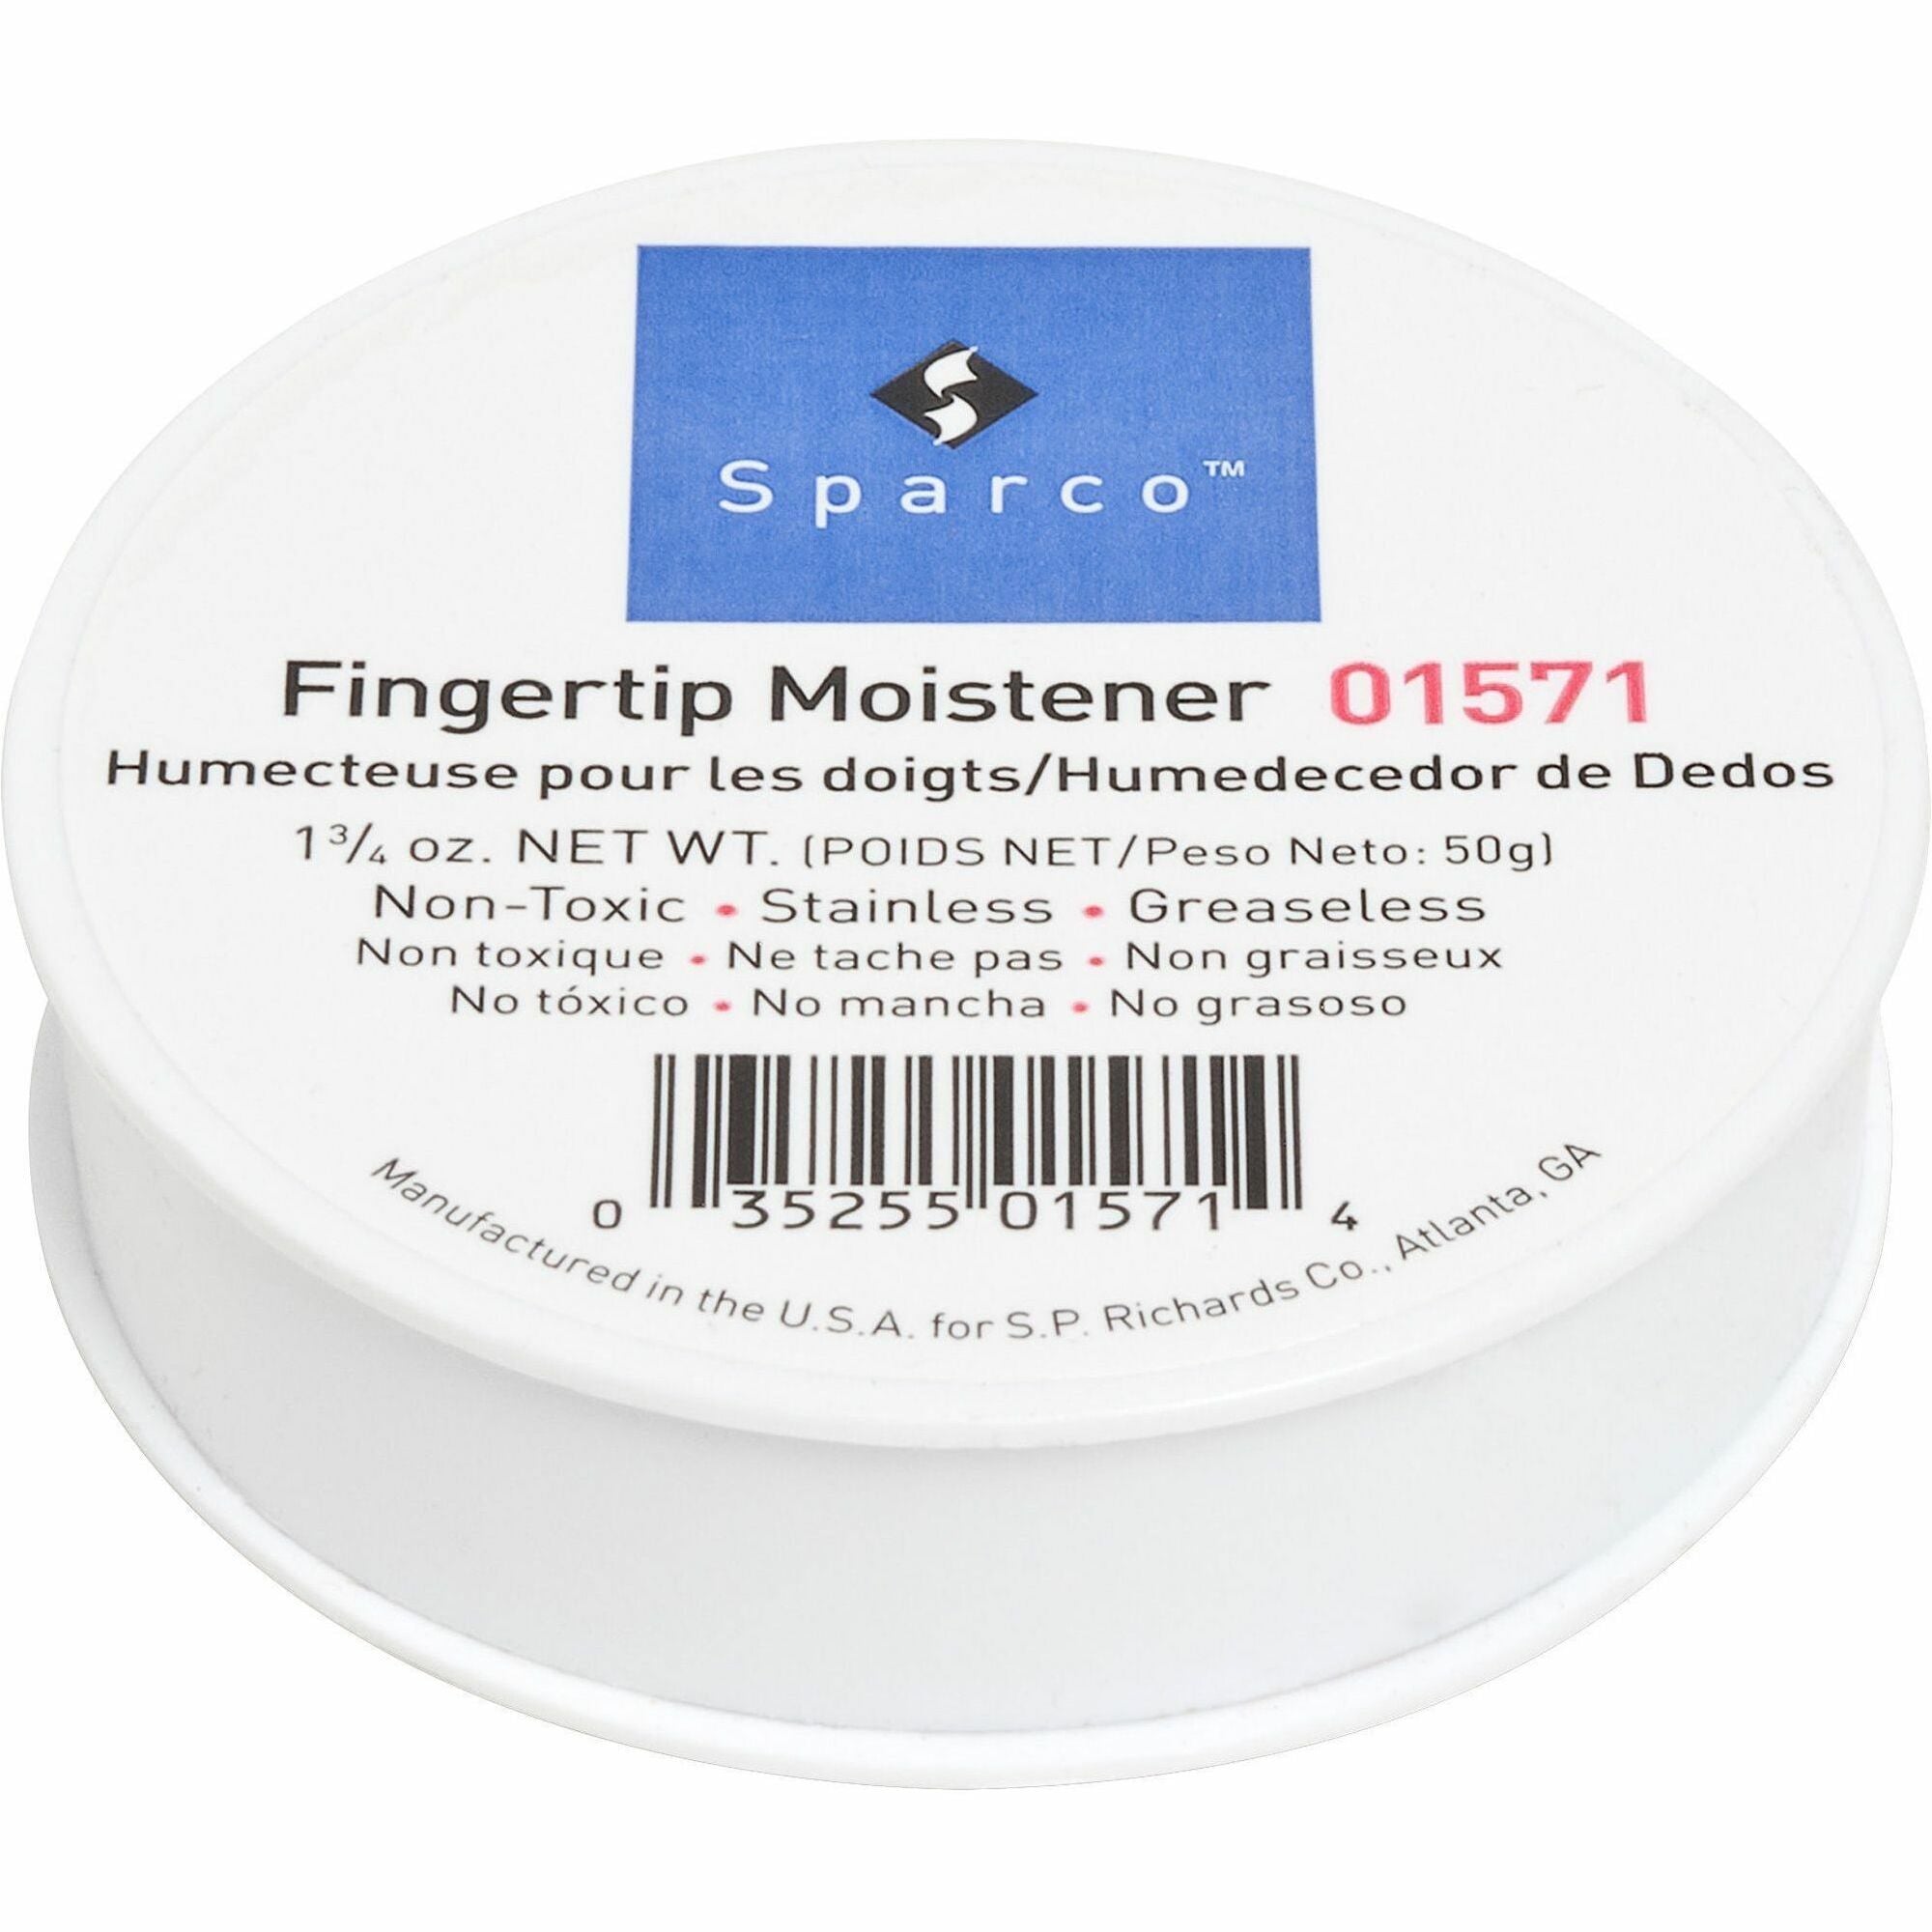 Sparco 1 3/4 Ounce Fingertip Moistener - White - Non-slip, Greaseless, Stainingless, Odorless - 1 Each - 